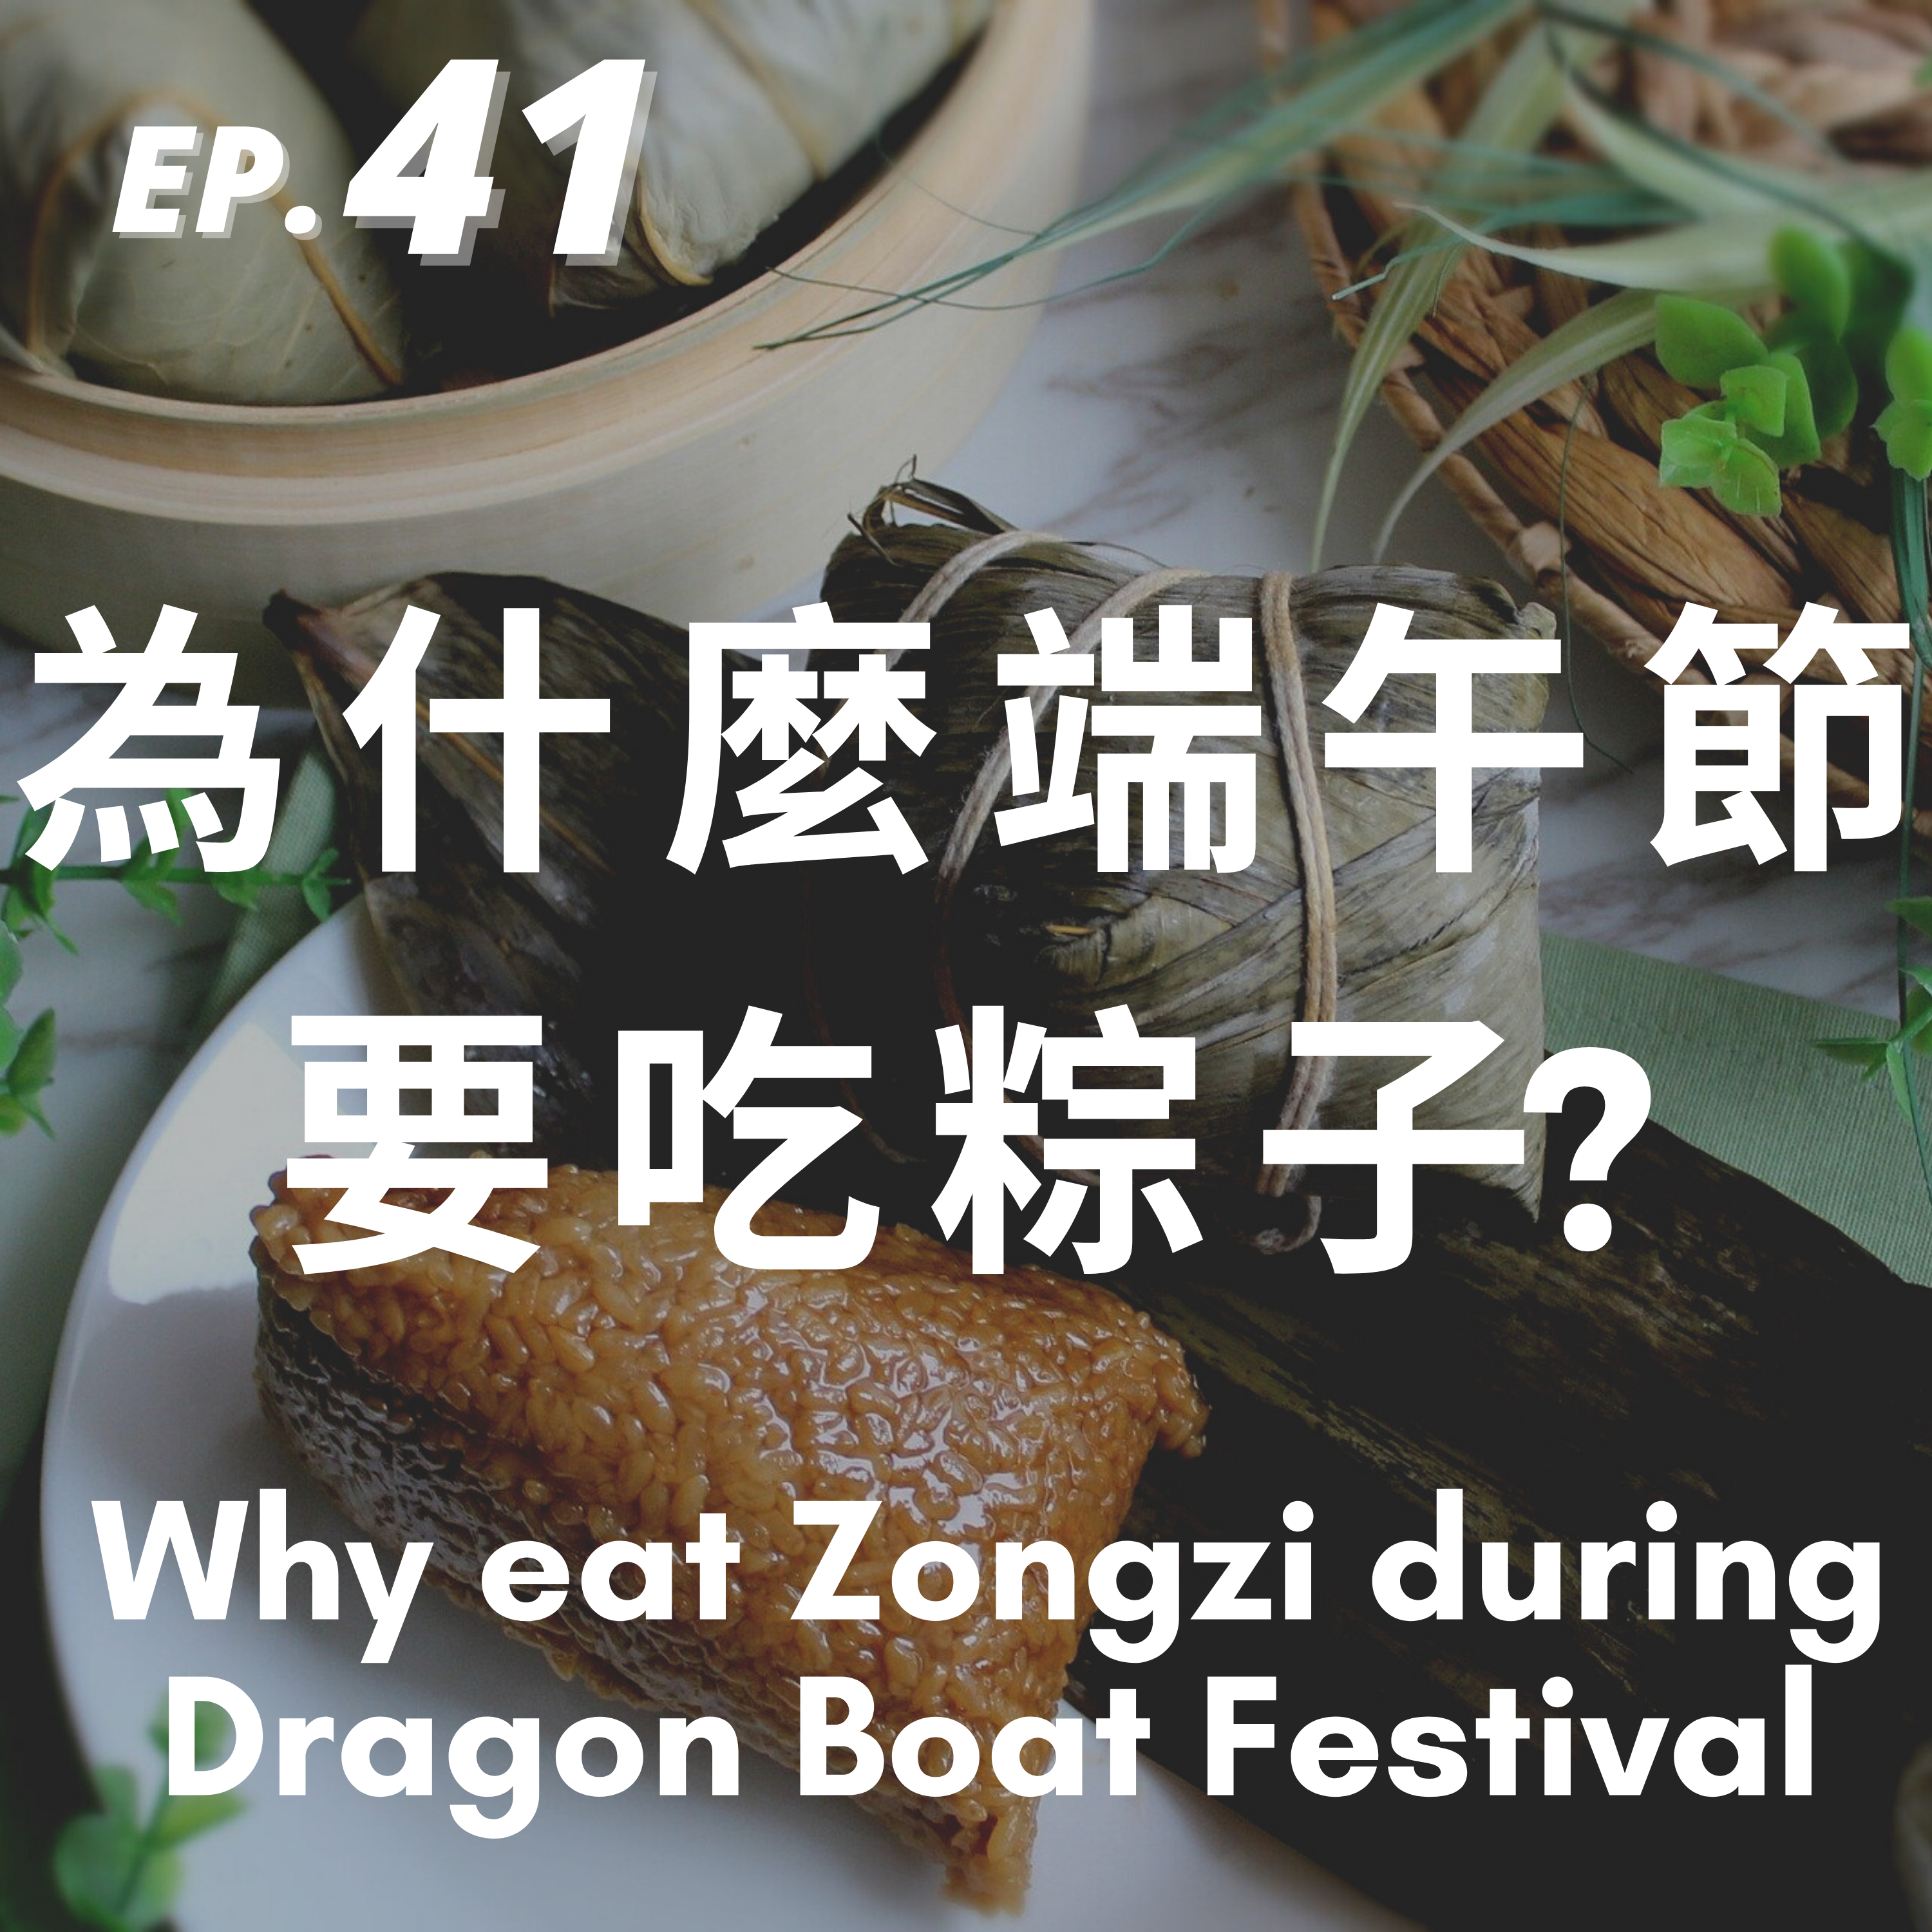 41. 為什麼端午節要吃粽子? Why eat Zongzi during Dragon Boat Festival?